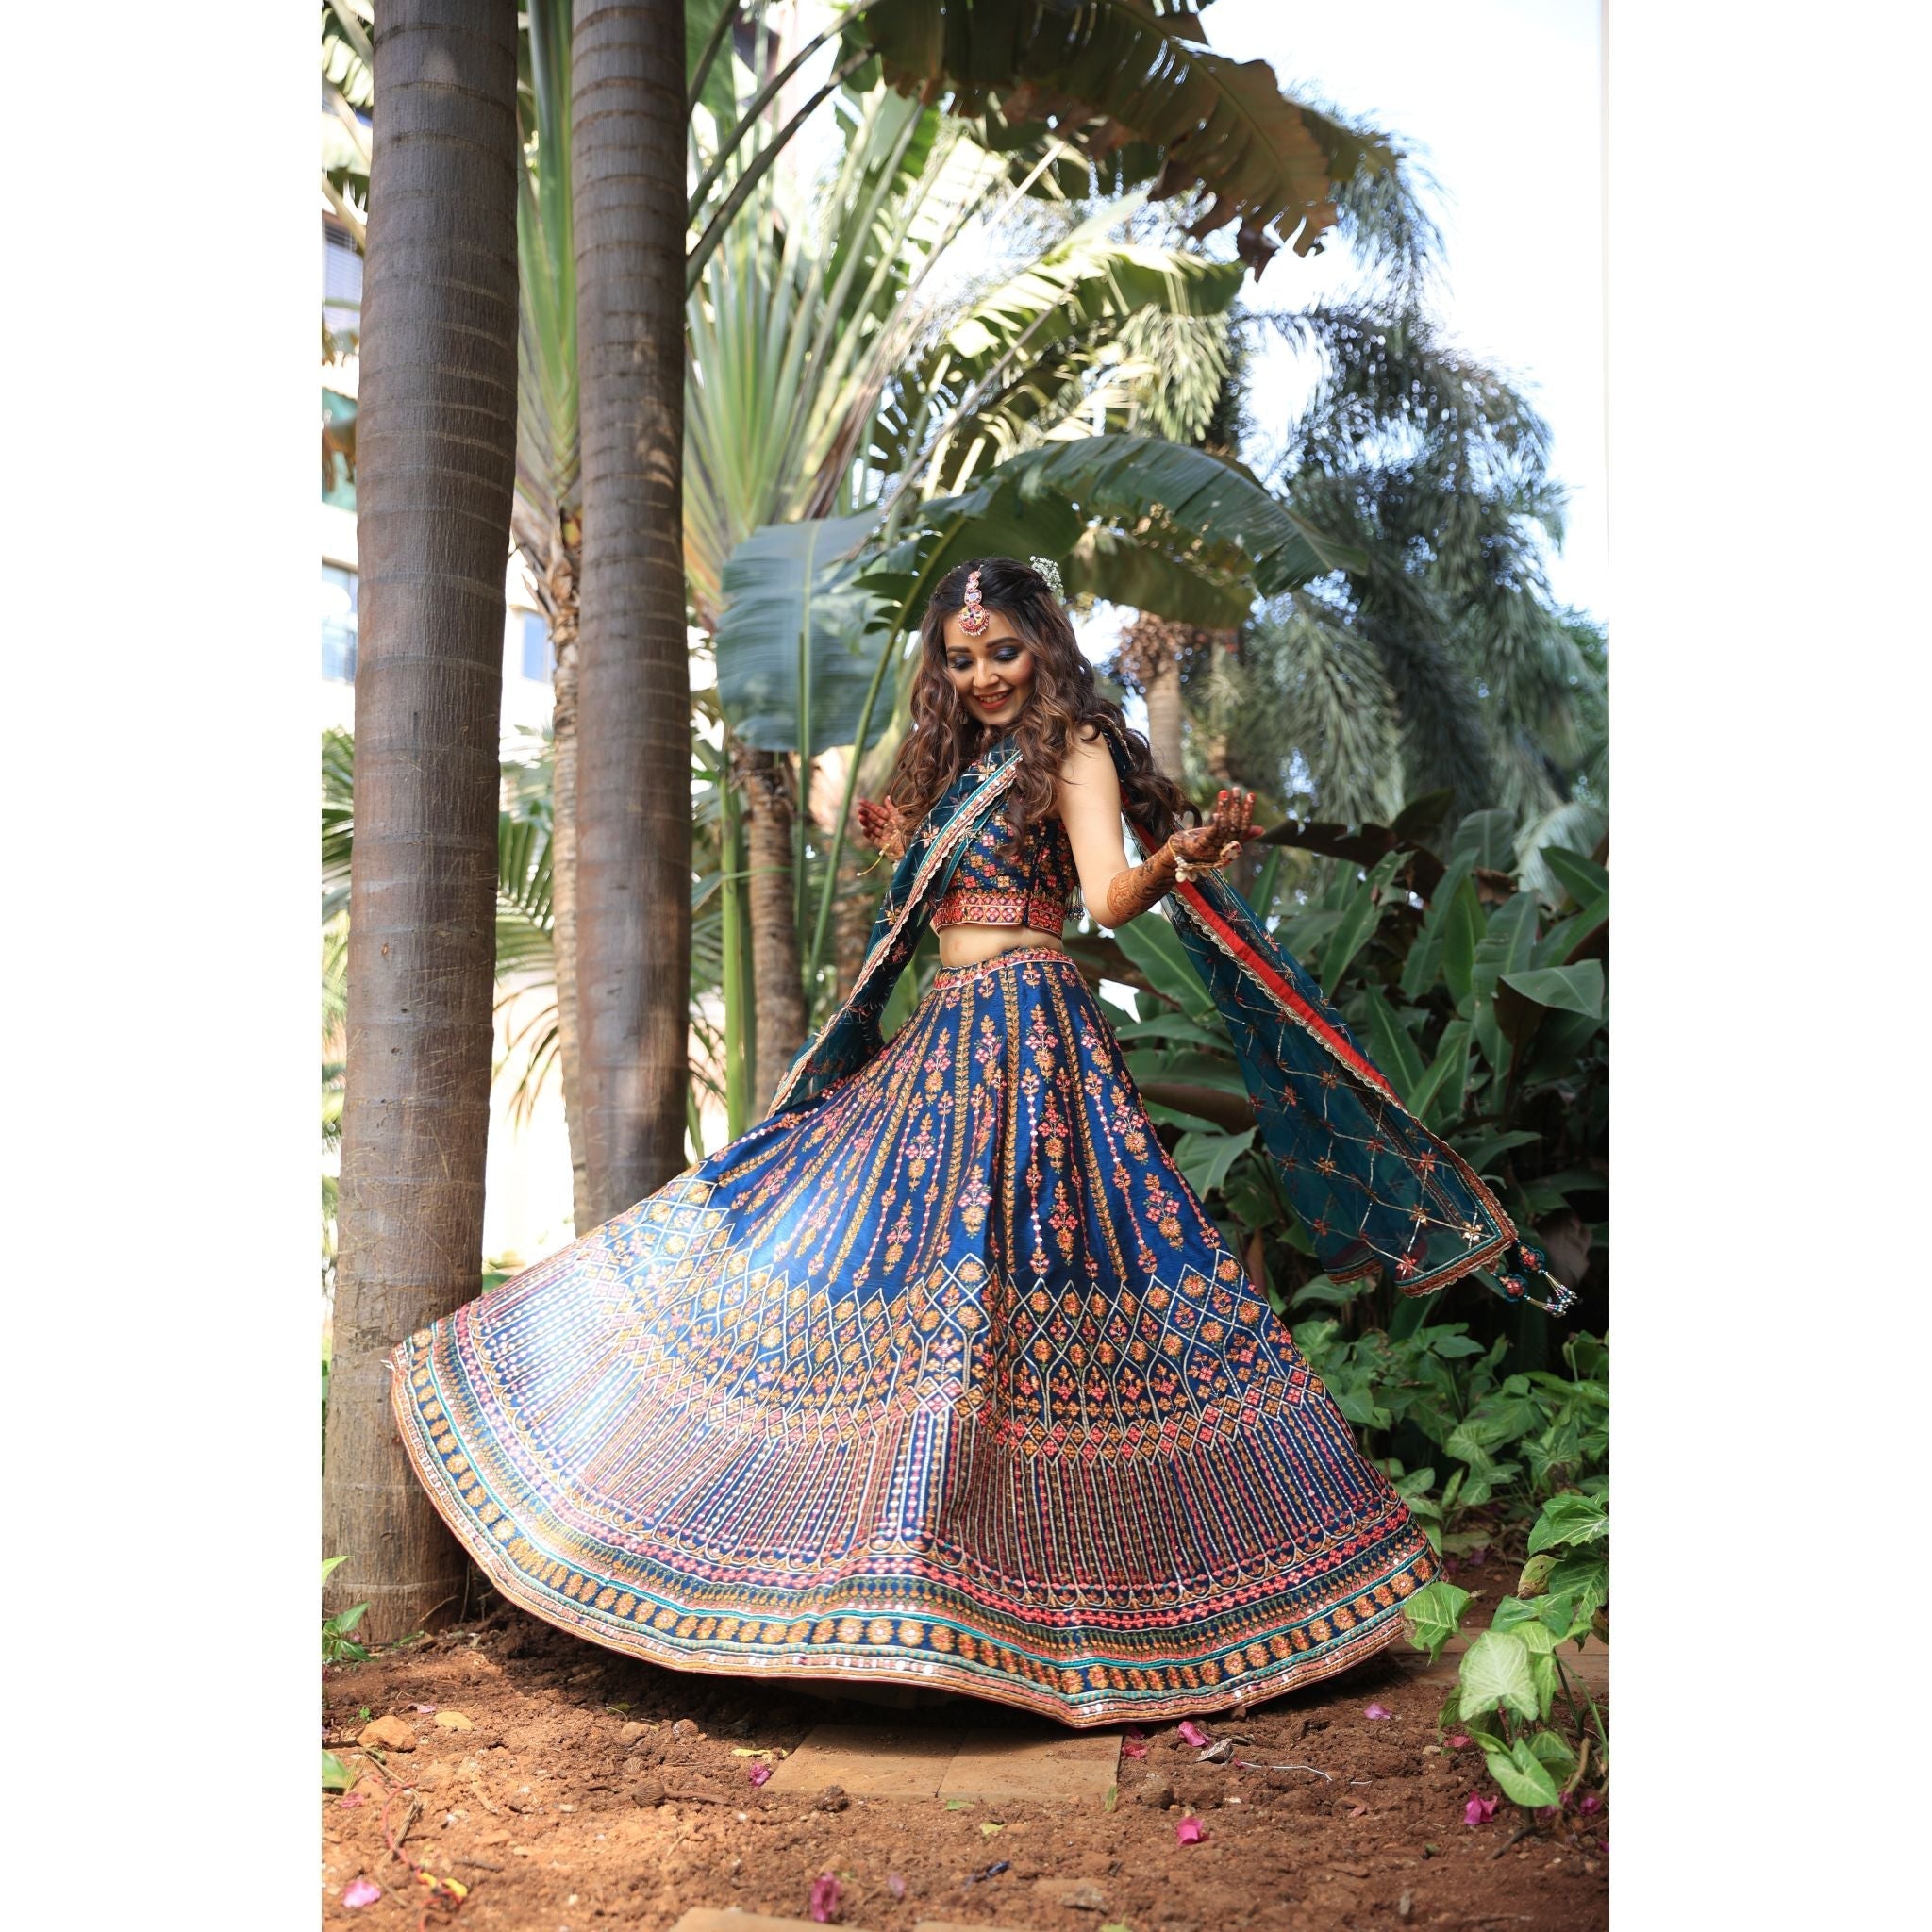 Teal Indigo Mirrorwork Lehenga - Indian Designer Bridal Wedding Outfit